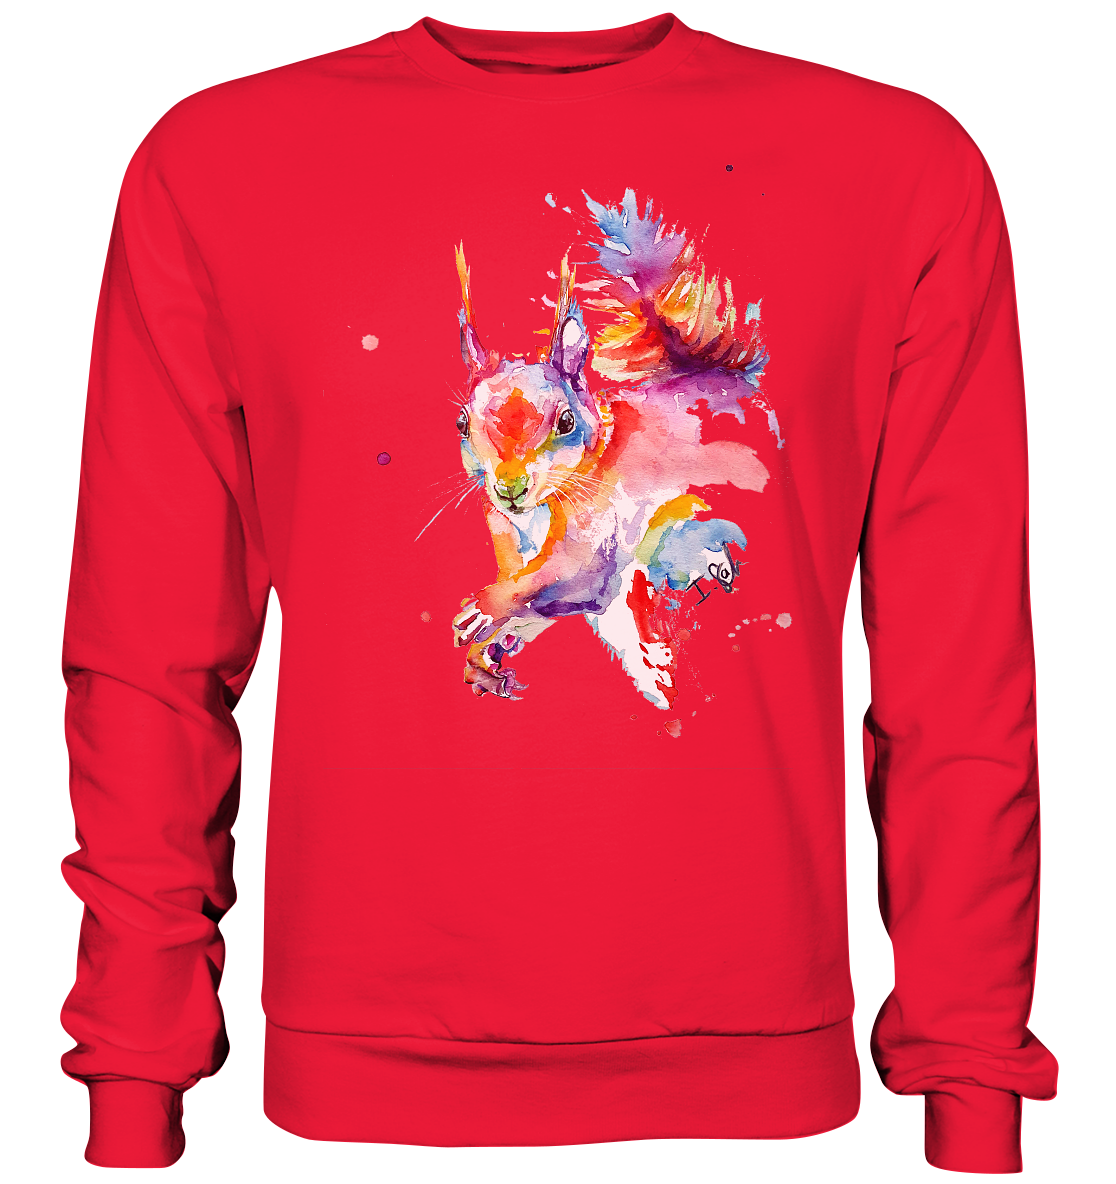 Buntes Eichhörnchen - Premium Sweatshirt